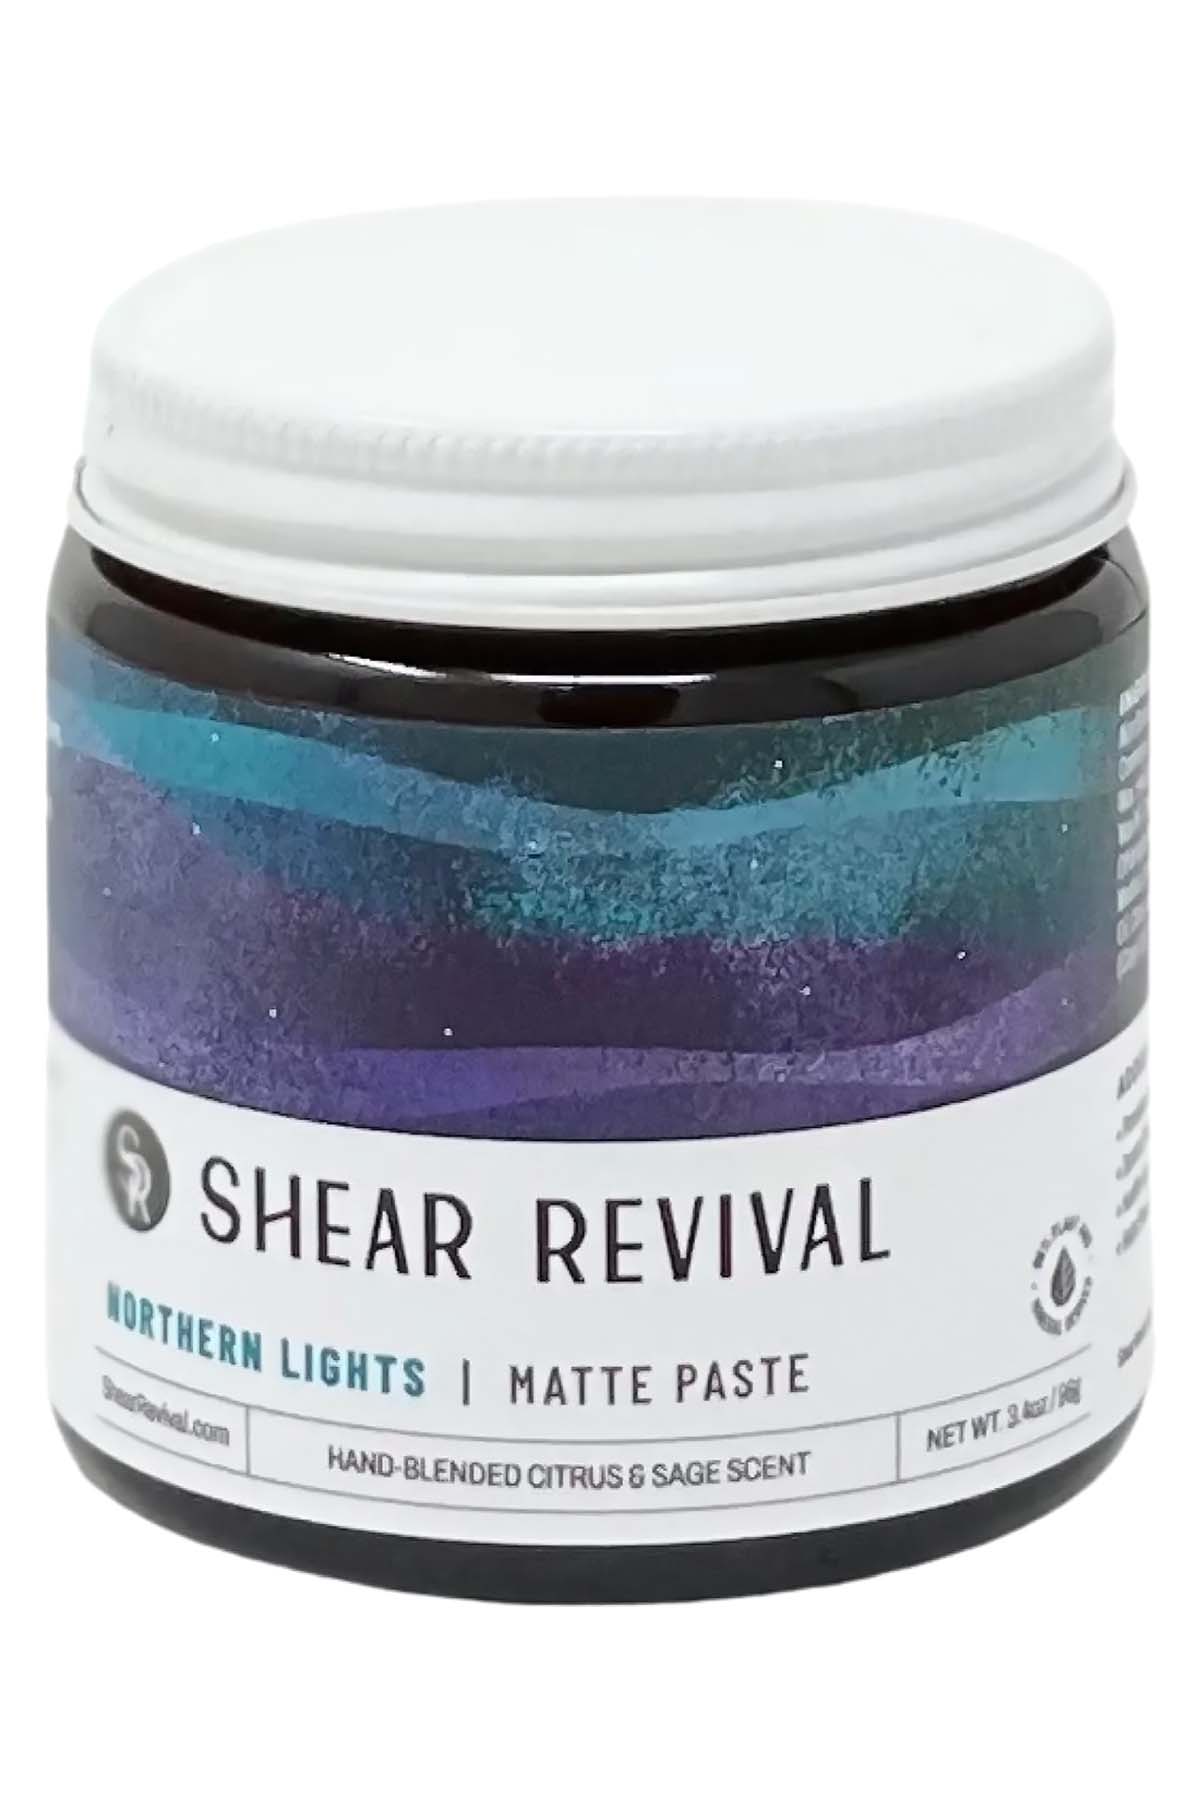 Shear Revival Northern Lights Matte Paste